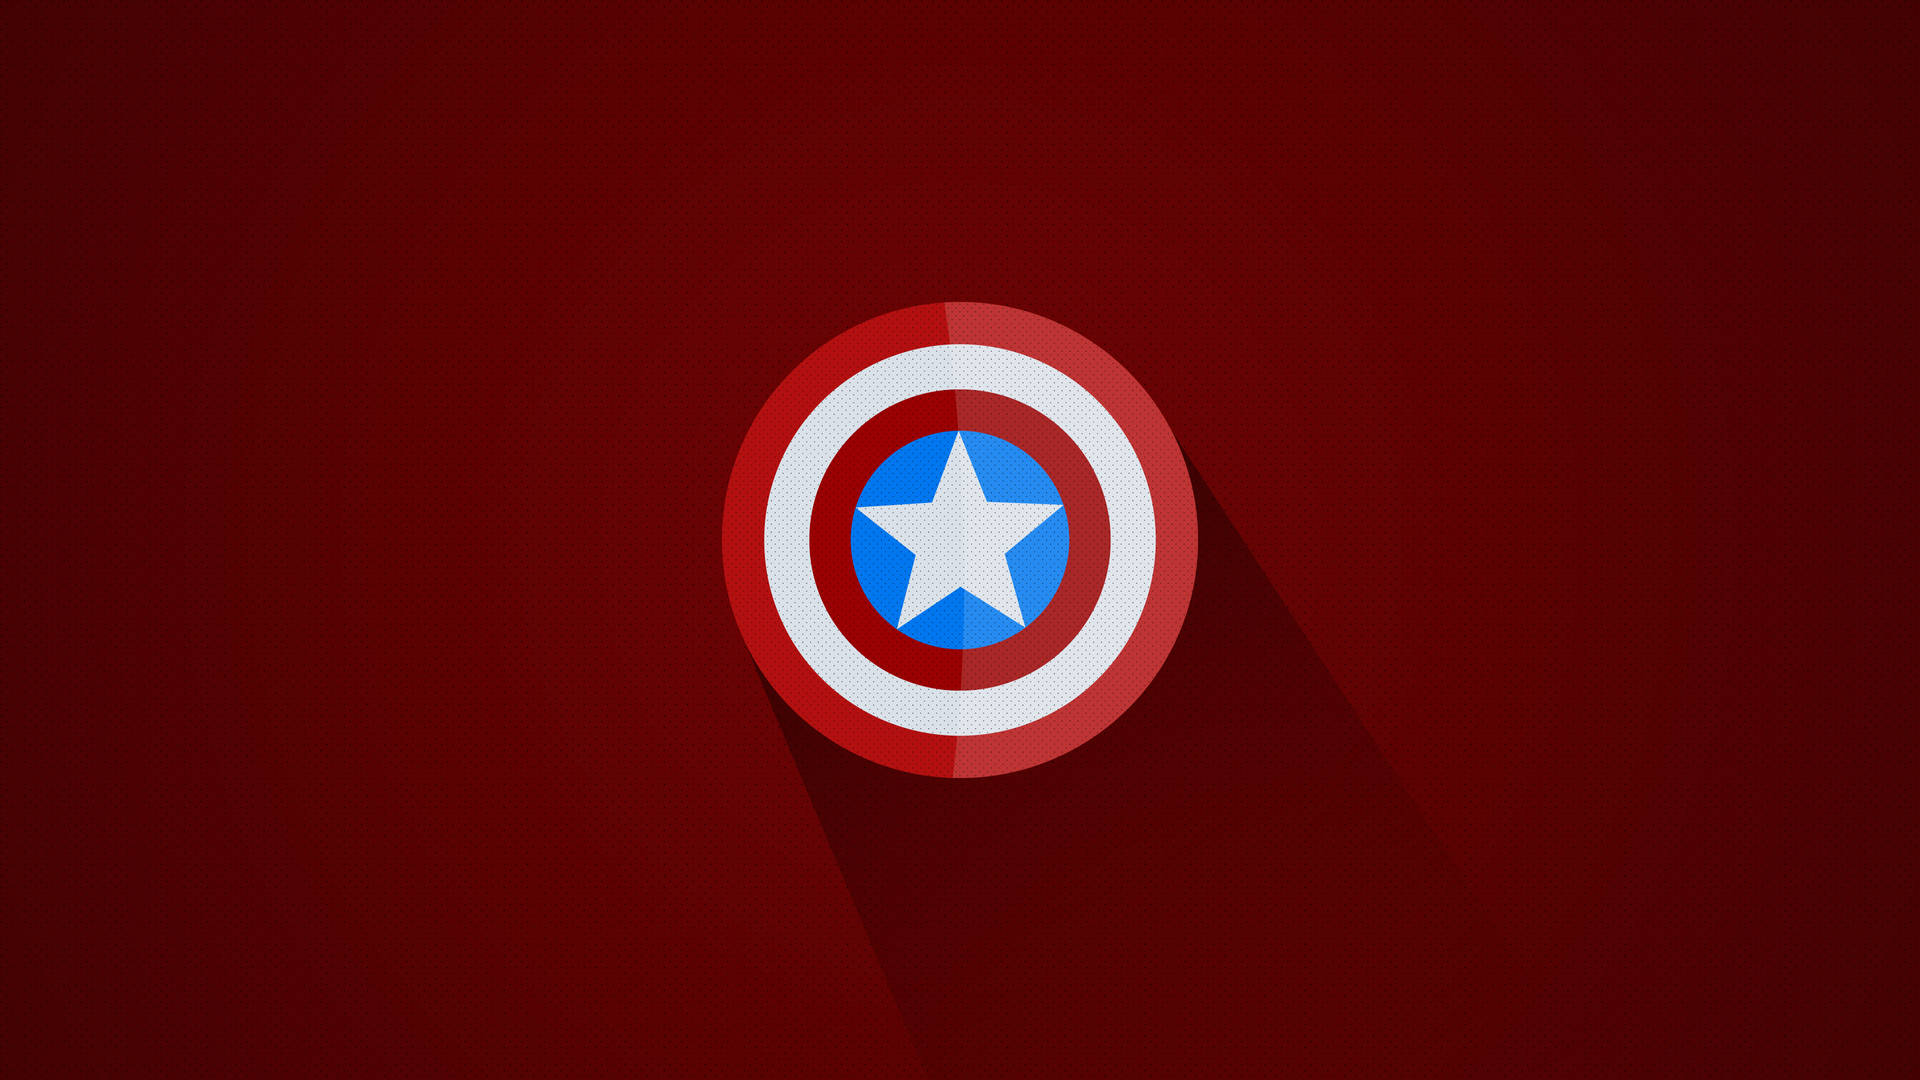 Crimson Captain America Shield Background